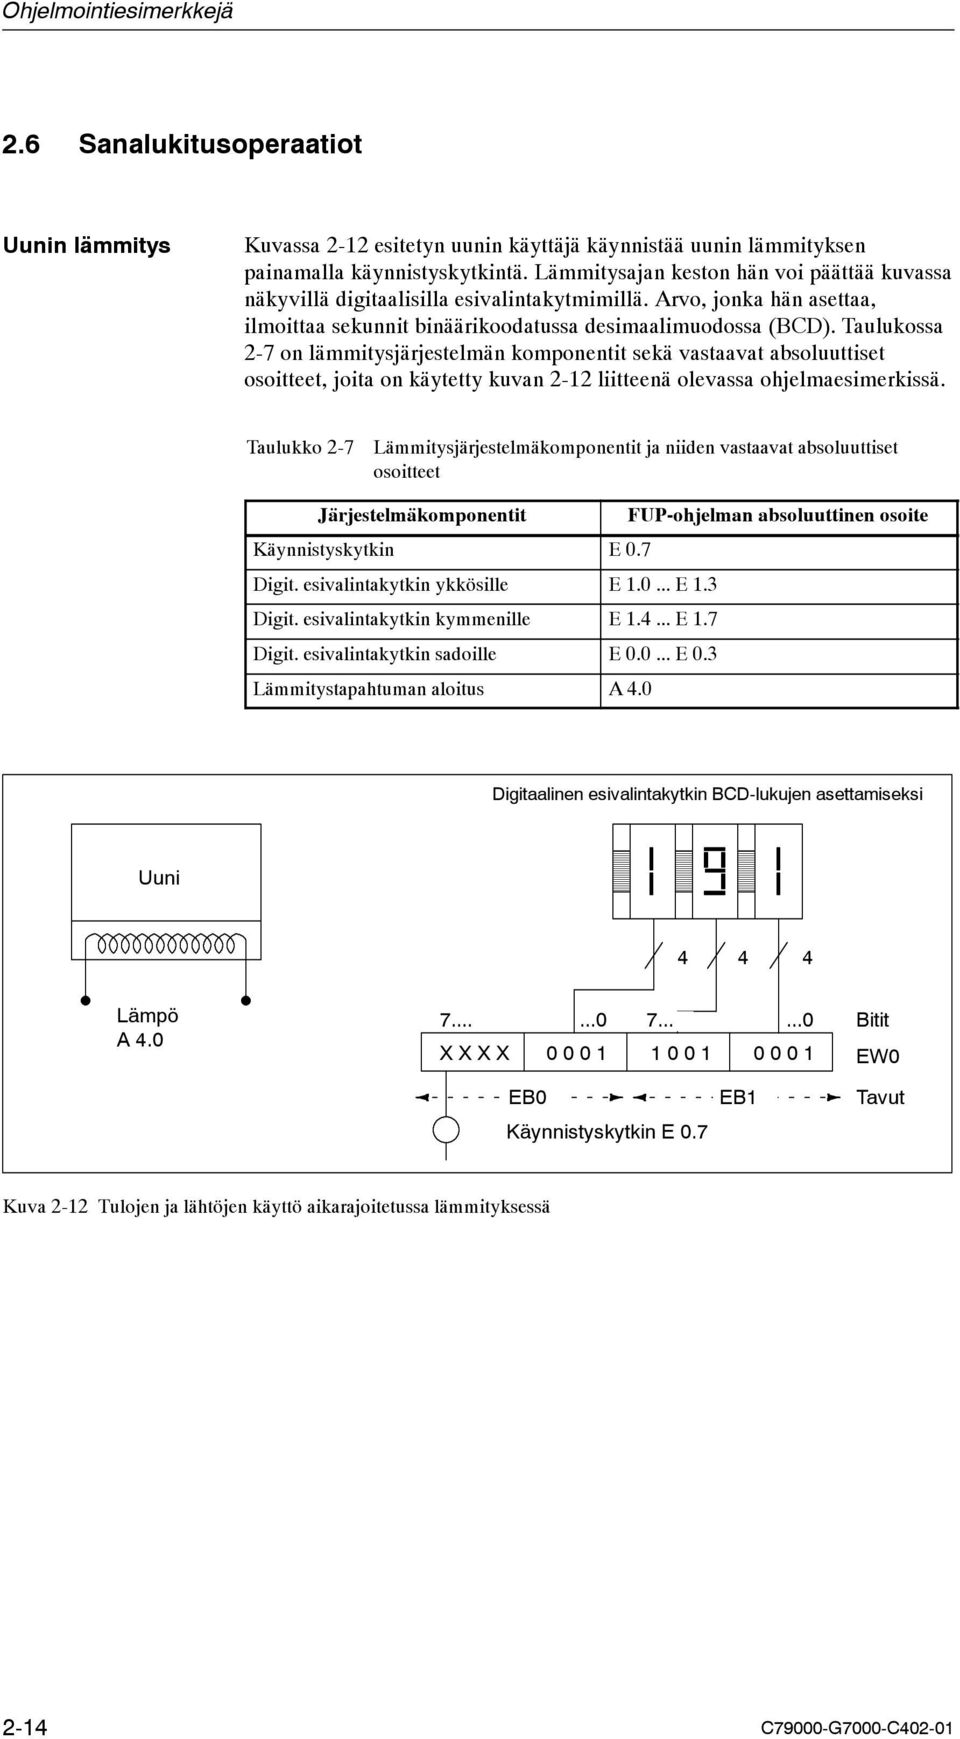 Taulukossa 2-7 on lämmitysjärjestelmän komponentit sekä vastaavat absoluuttiset osoitteet, joita on käytetty kuvan 2-12 liitteenä olevassa ohjelmaesimerkissä.